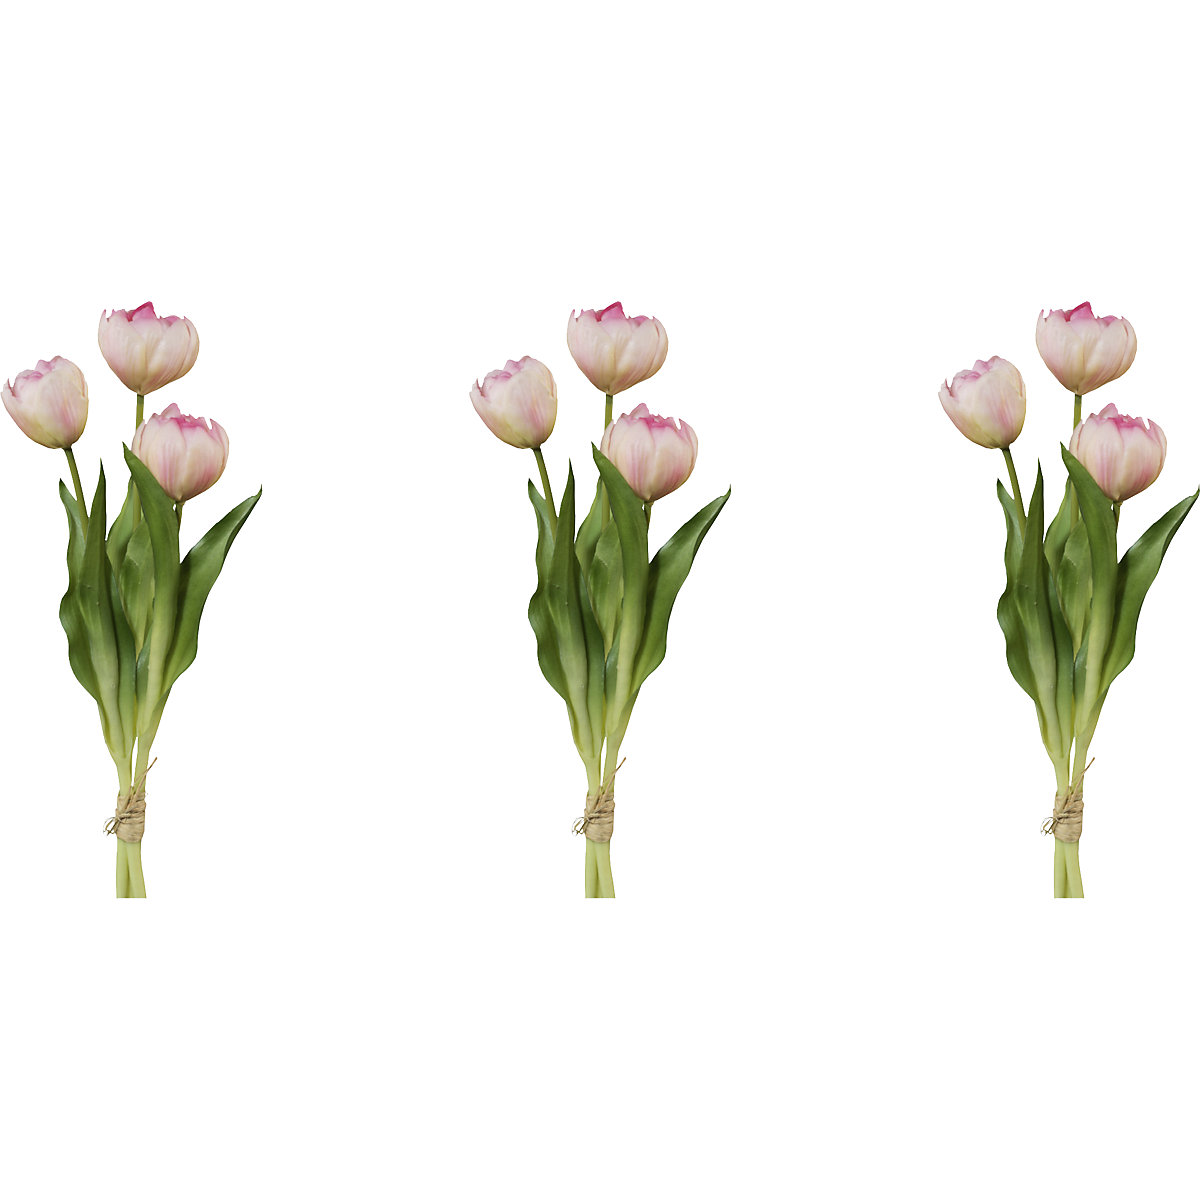 Teltvirágú tulipánok, valódi tapintás, 3 db-os csokor